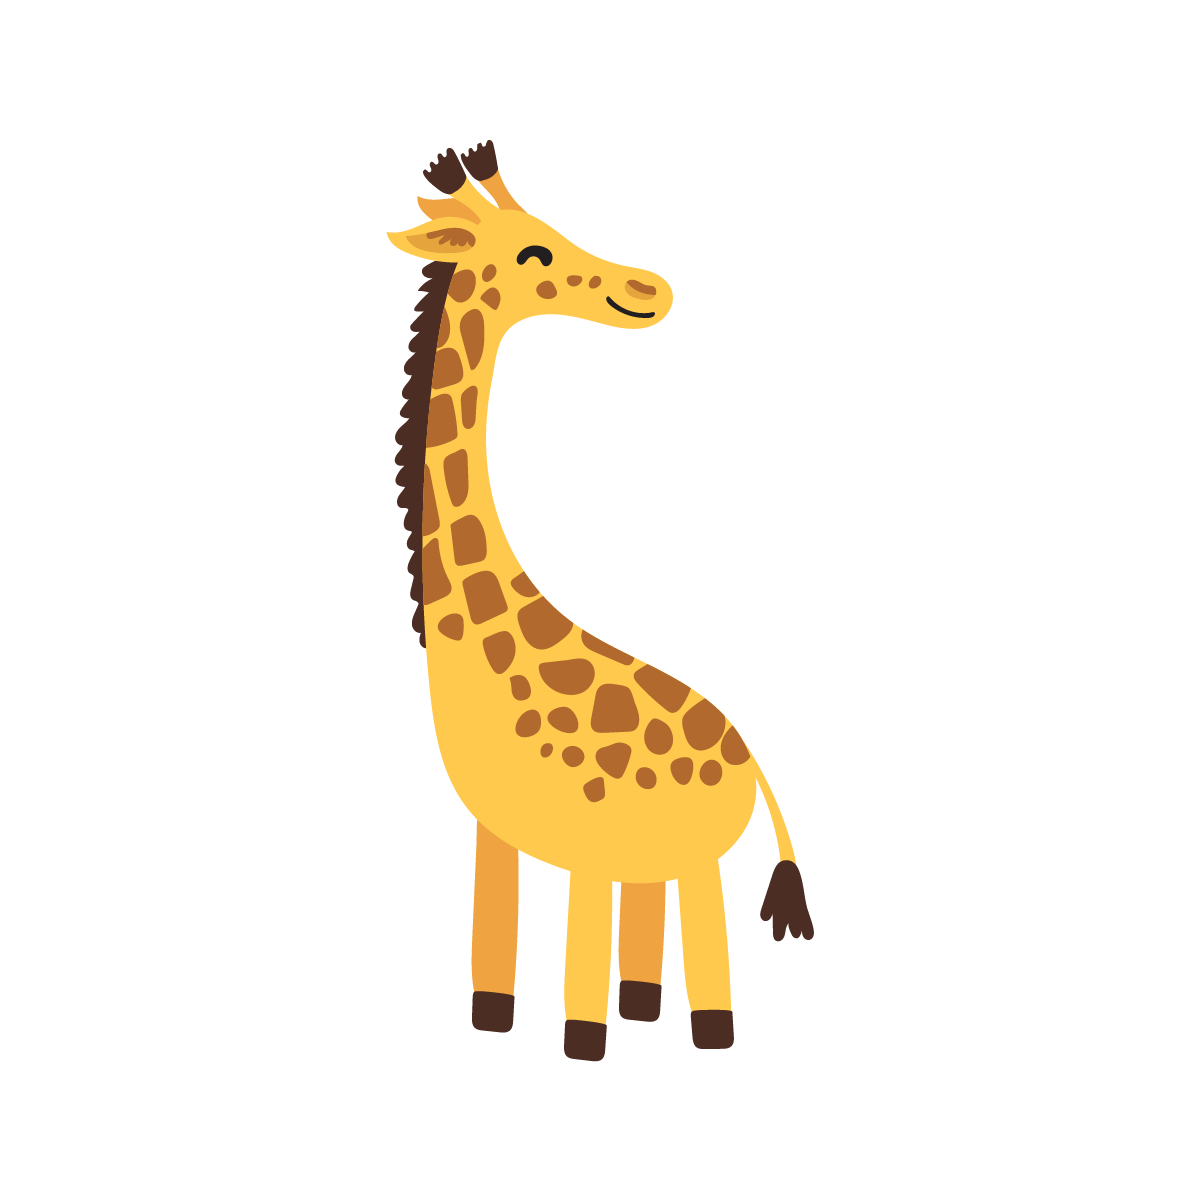 playful giraffe illustration for children’s books